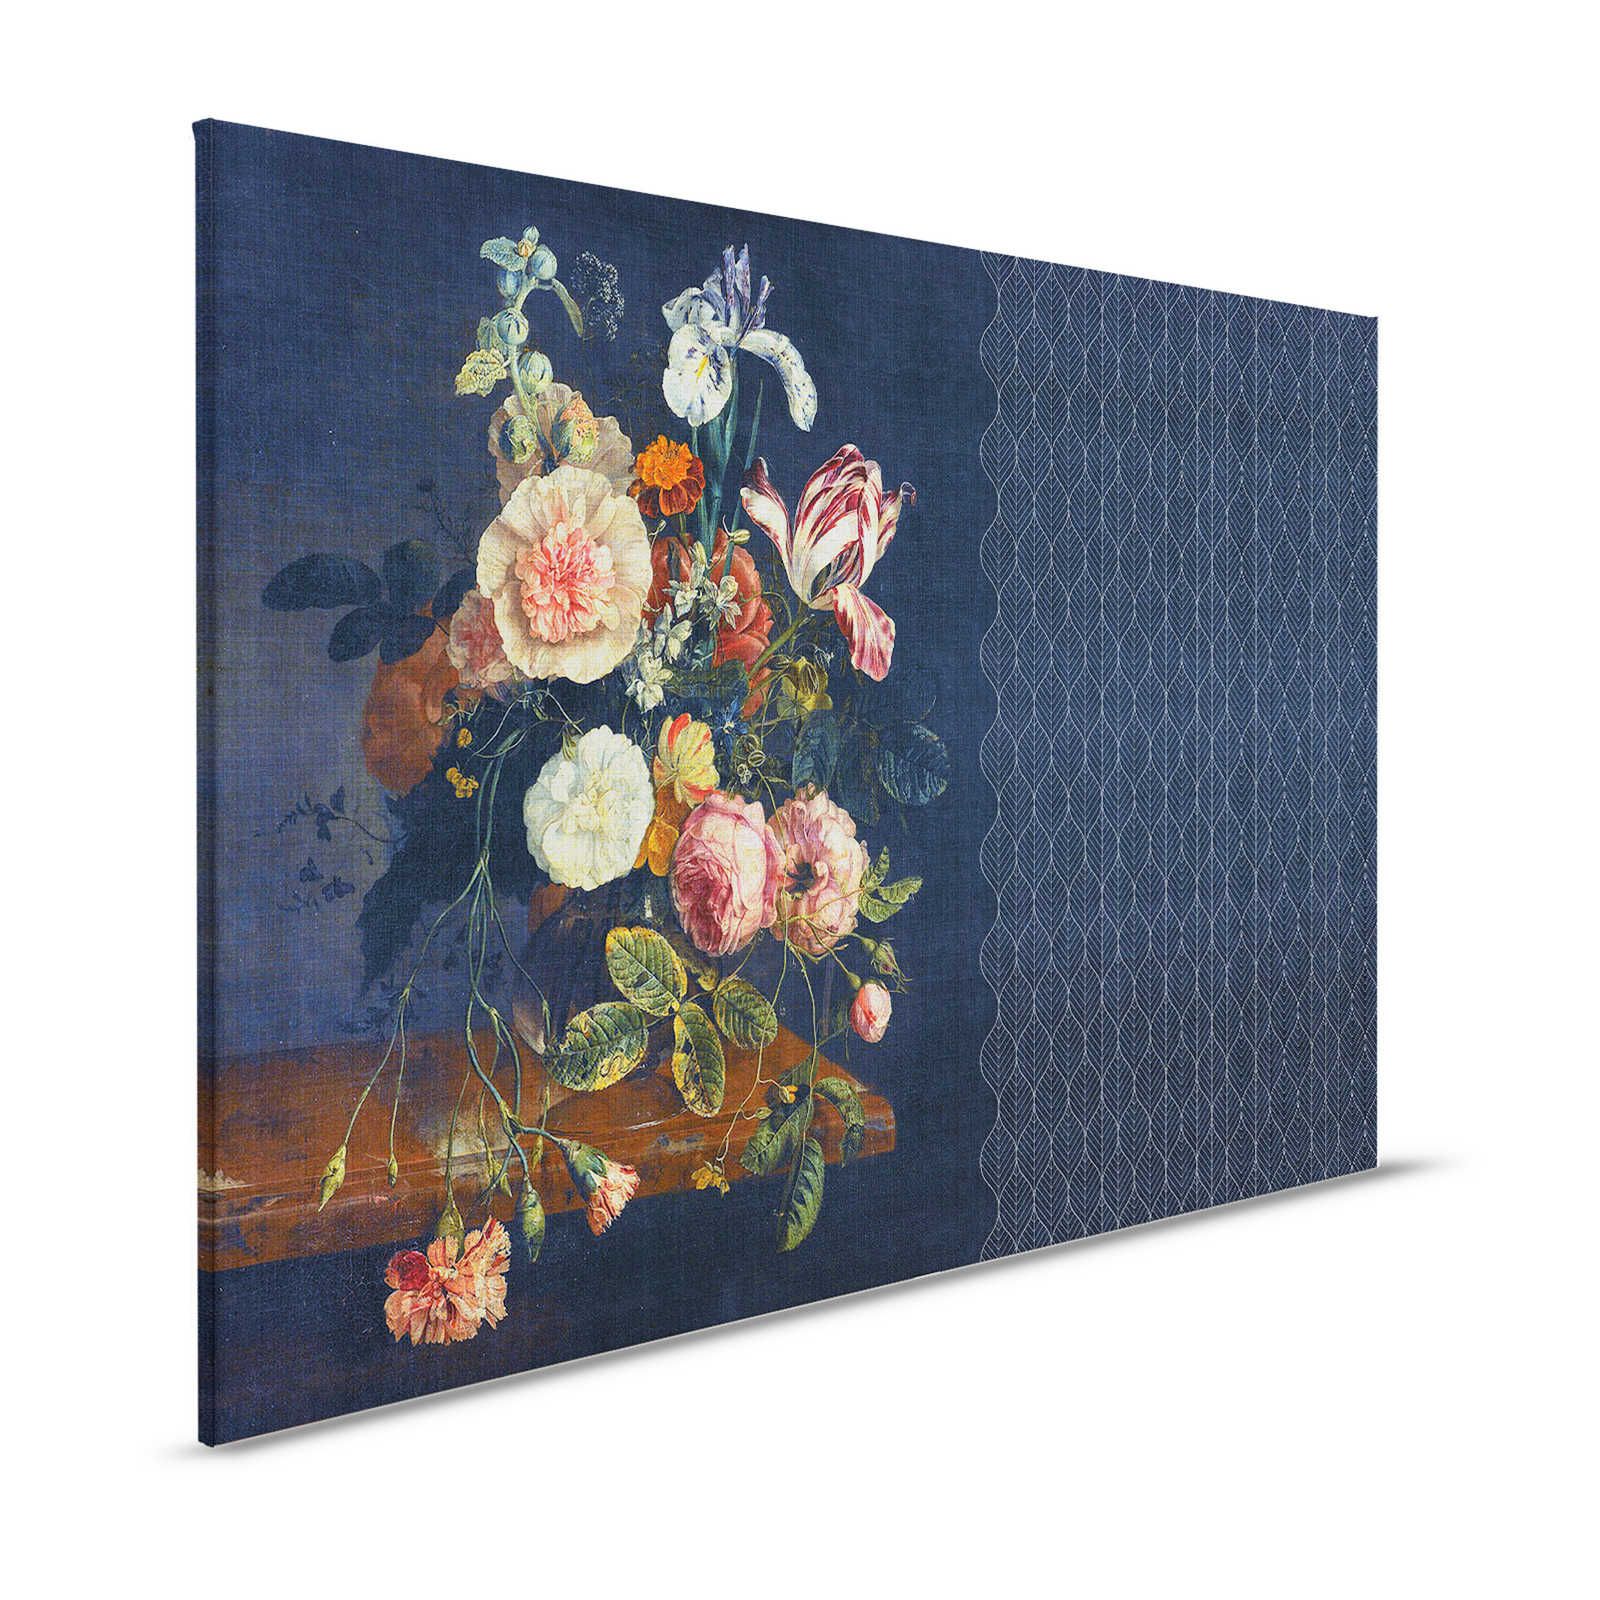 Cortina 2 - Lienzo azul oscuro motivo Art Déco con ramo de flores - 1,20 m x 0,80 m
